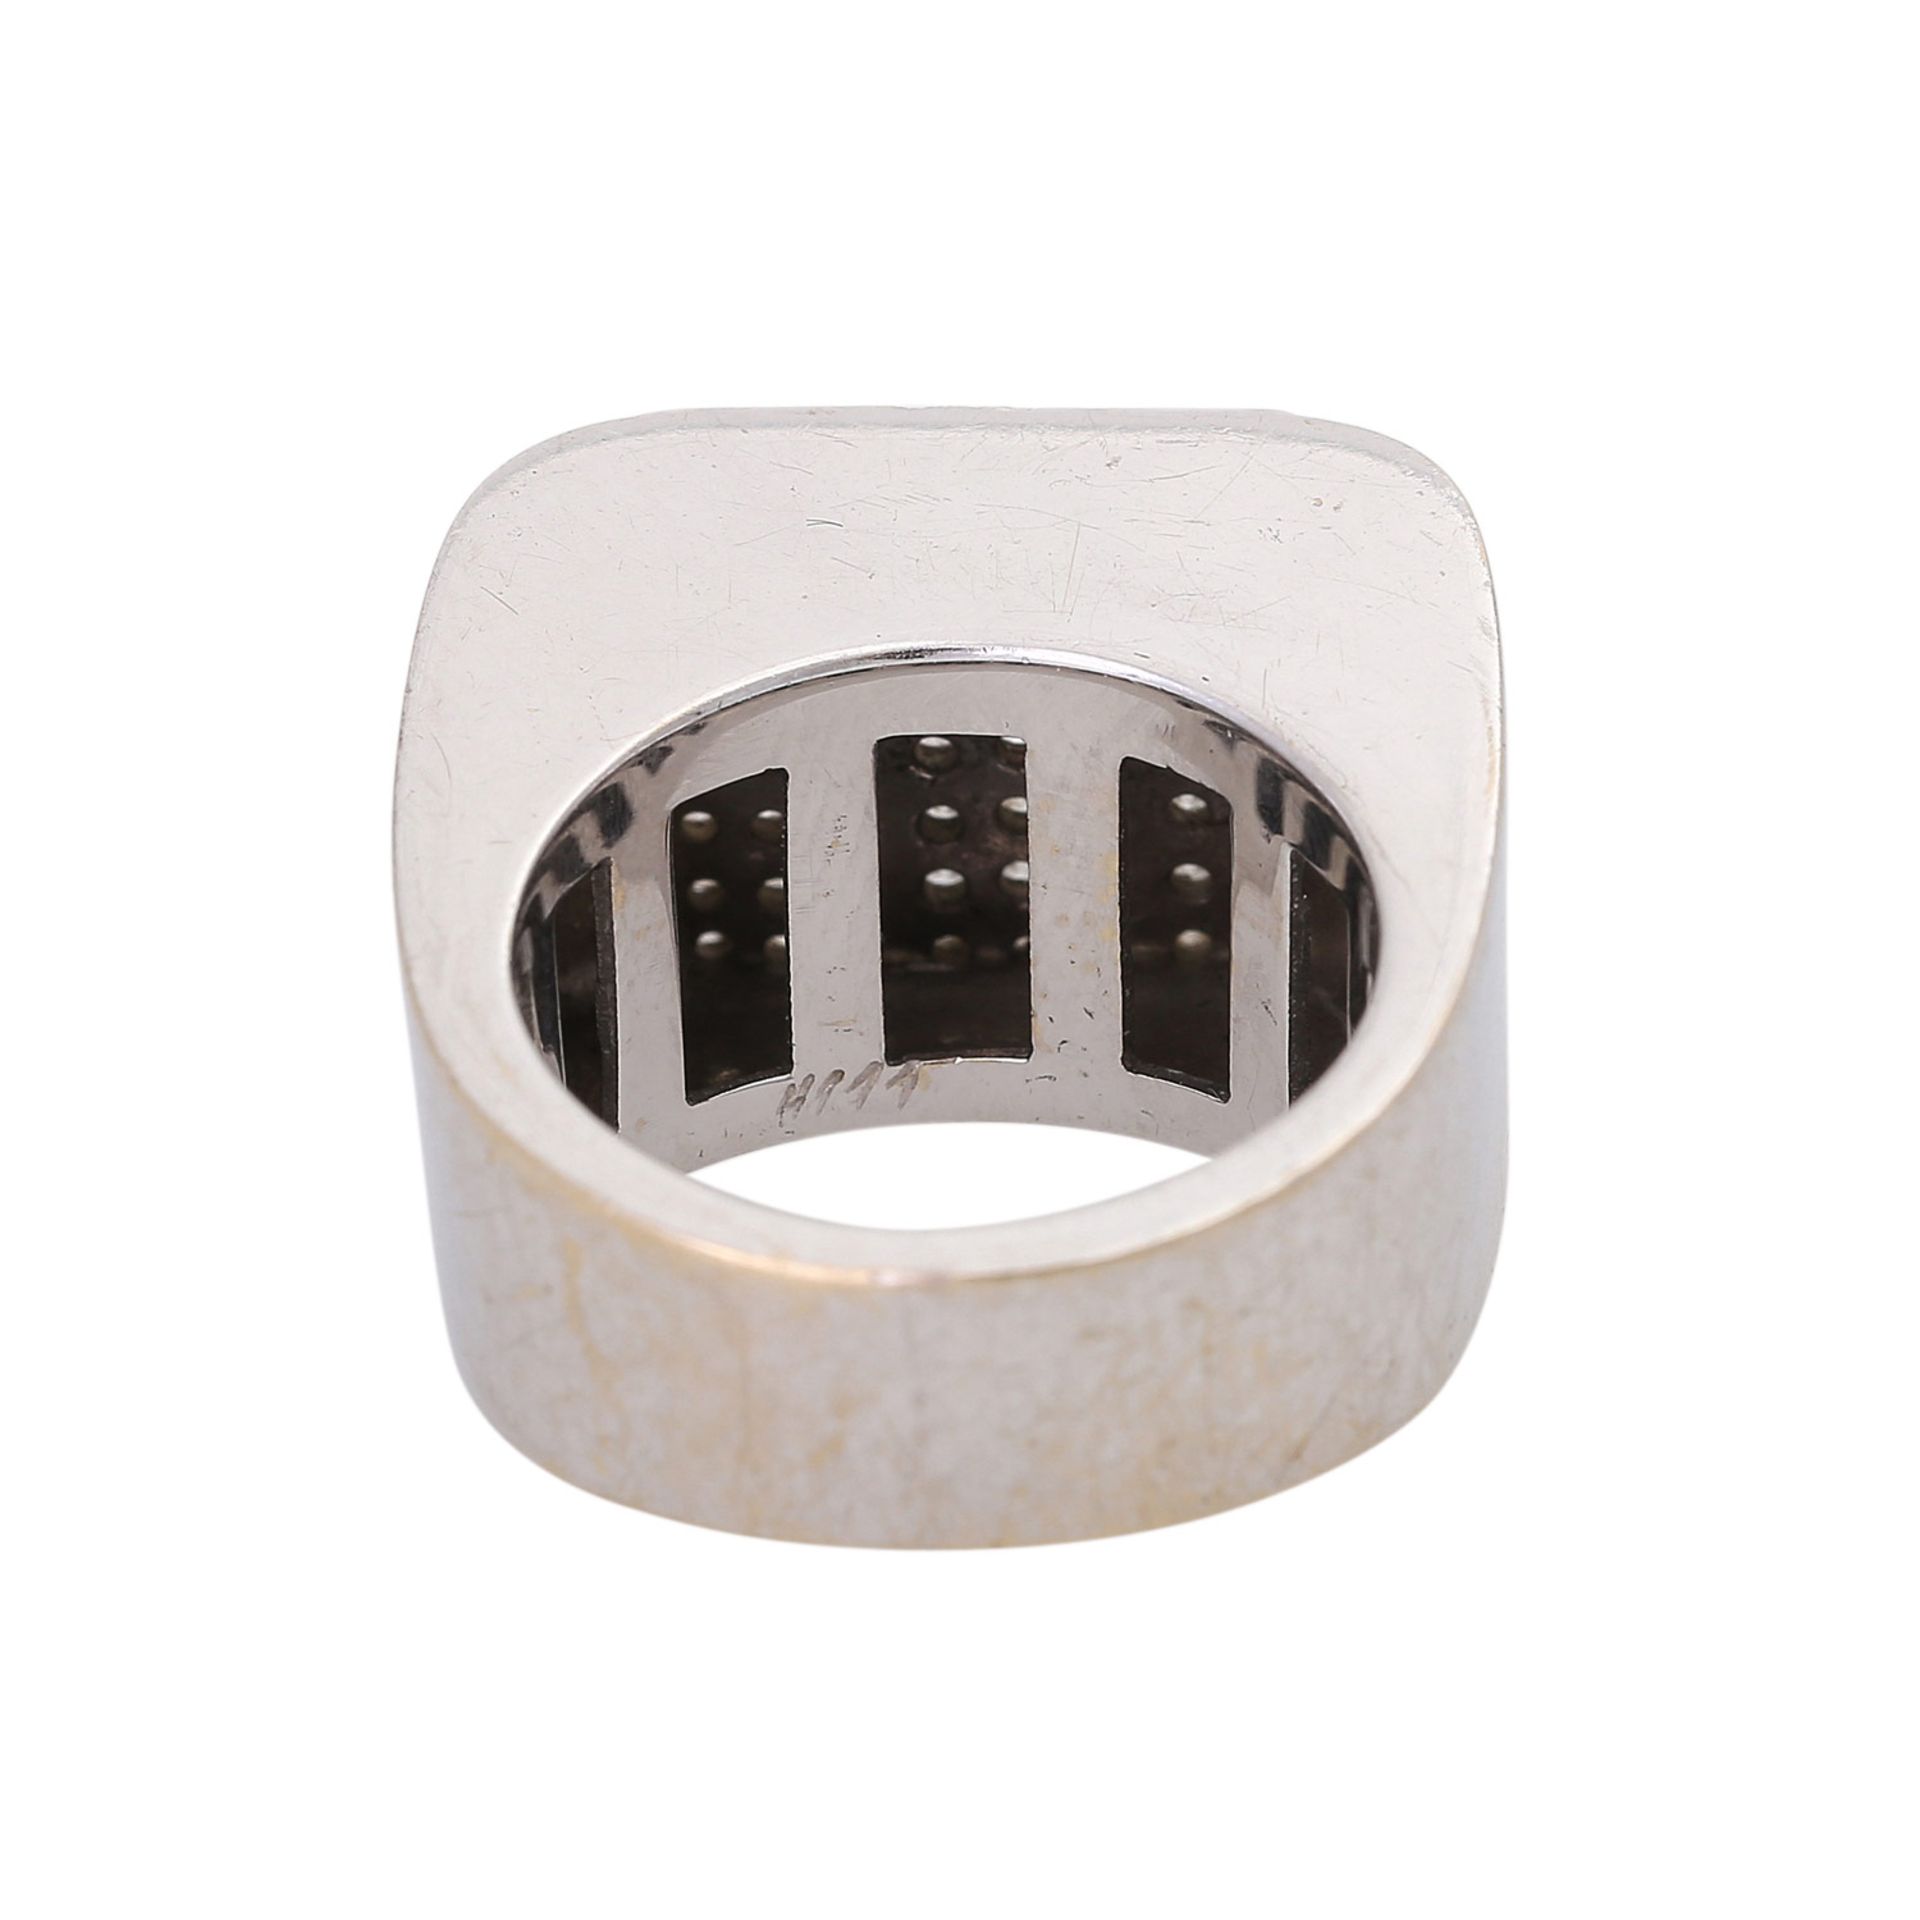 WEMPE Ring mit zahlreichen Brillanten ca. 0,64 ctvon guter Farbe und Reinheit, WG 18K, - Image 4 of 4